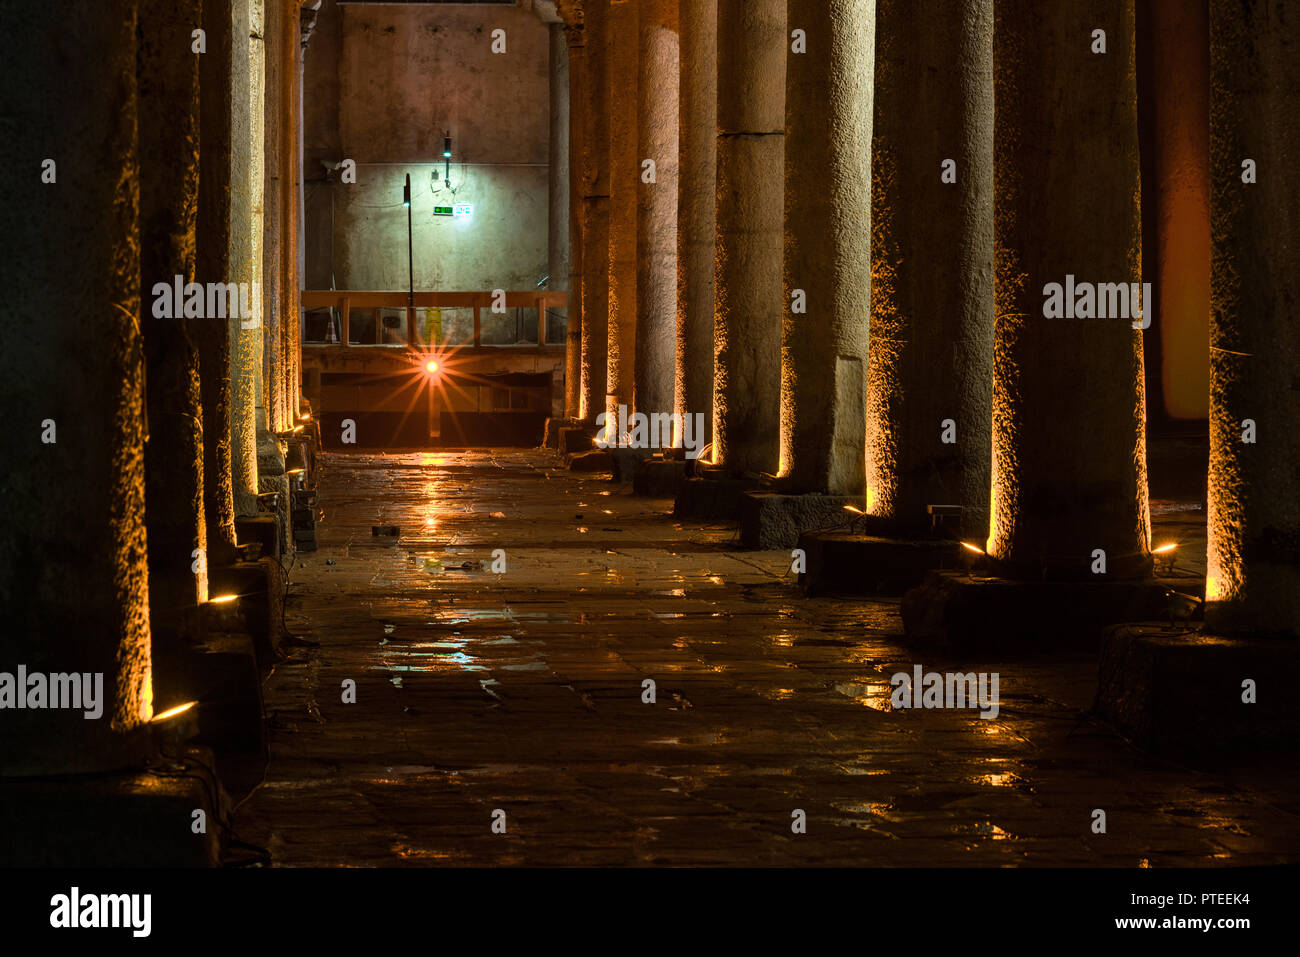 Consente di visualizzare le righe di antiche colonne romane in marmo nella Basilica Cisterna o Yerebatan Sarnıcı, Istanbul, Turchia Foto Stock